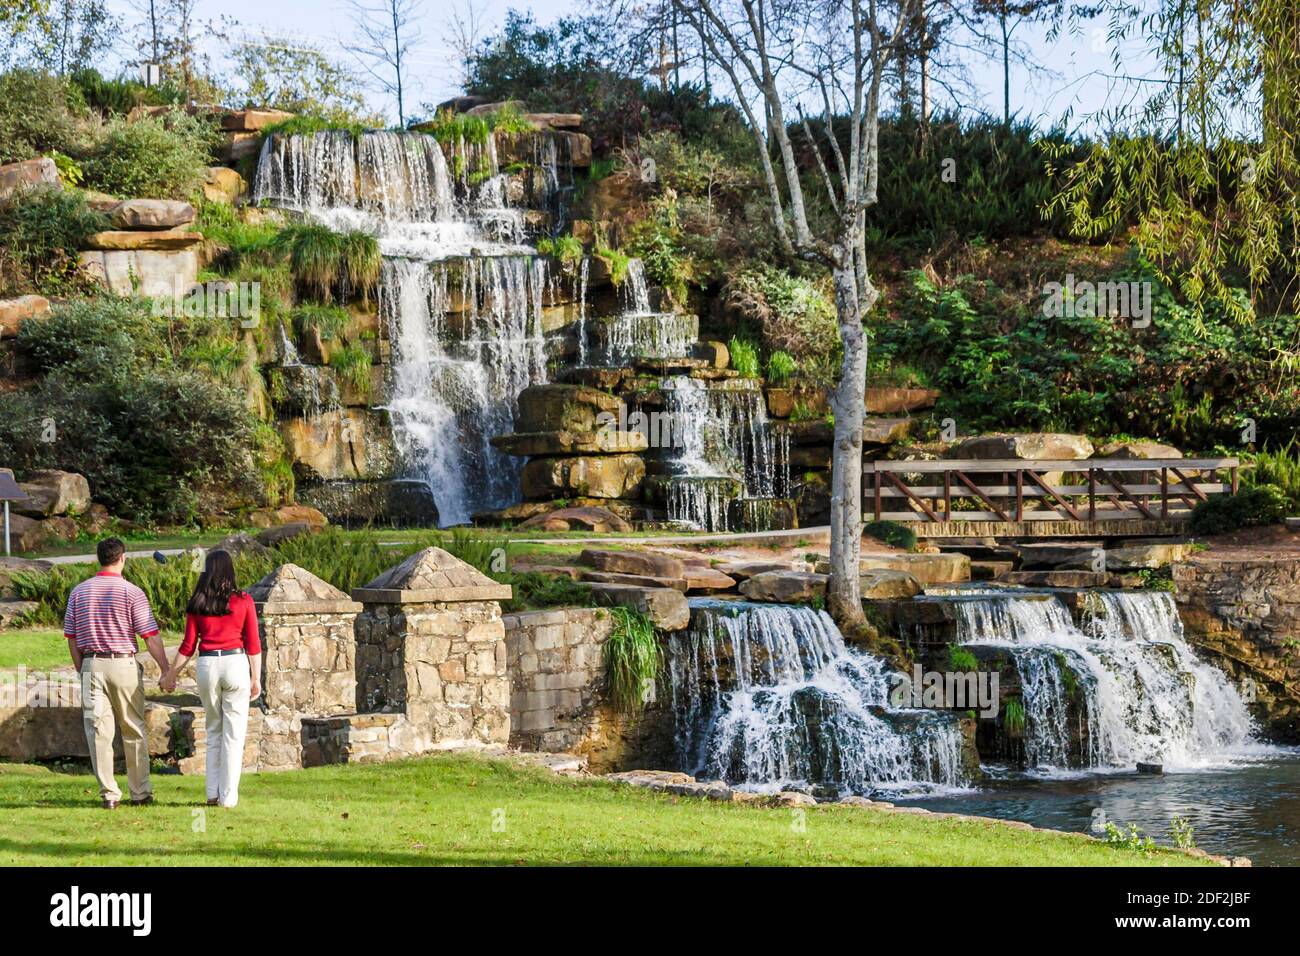 Alabama Tuscumbia Spring Creek Park Cold Water Falls, le plus grand couple de chutes d'eau naturelles en pierre artificielle du monde, homme femme, Banque D'Images